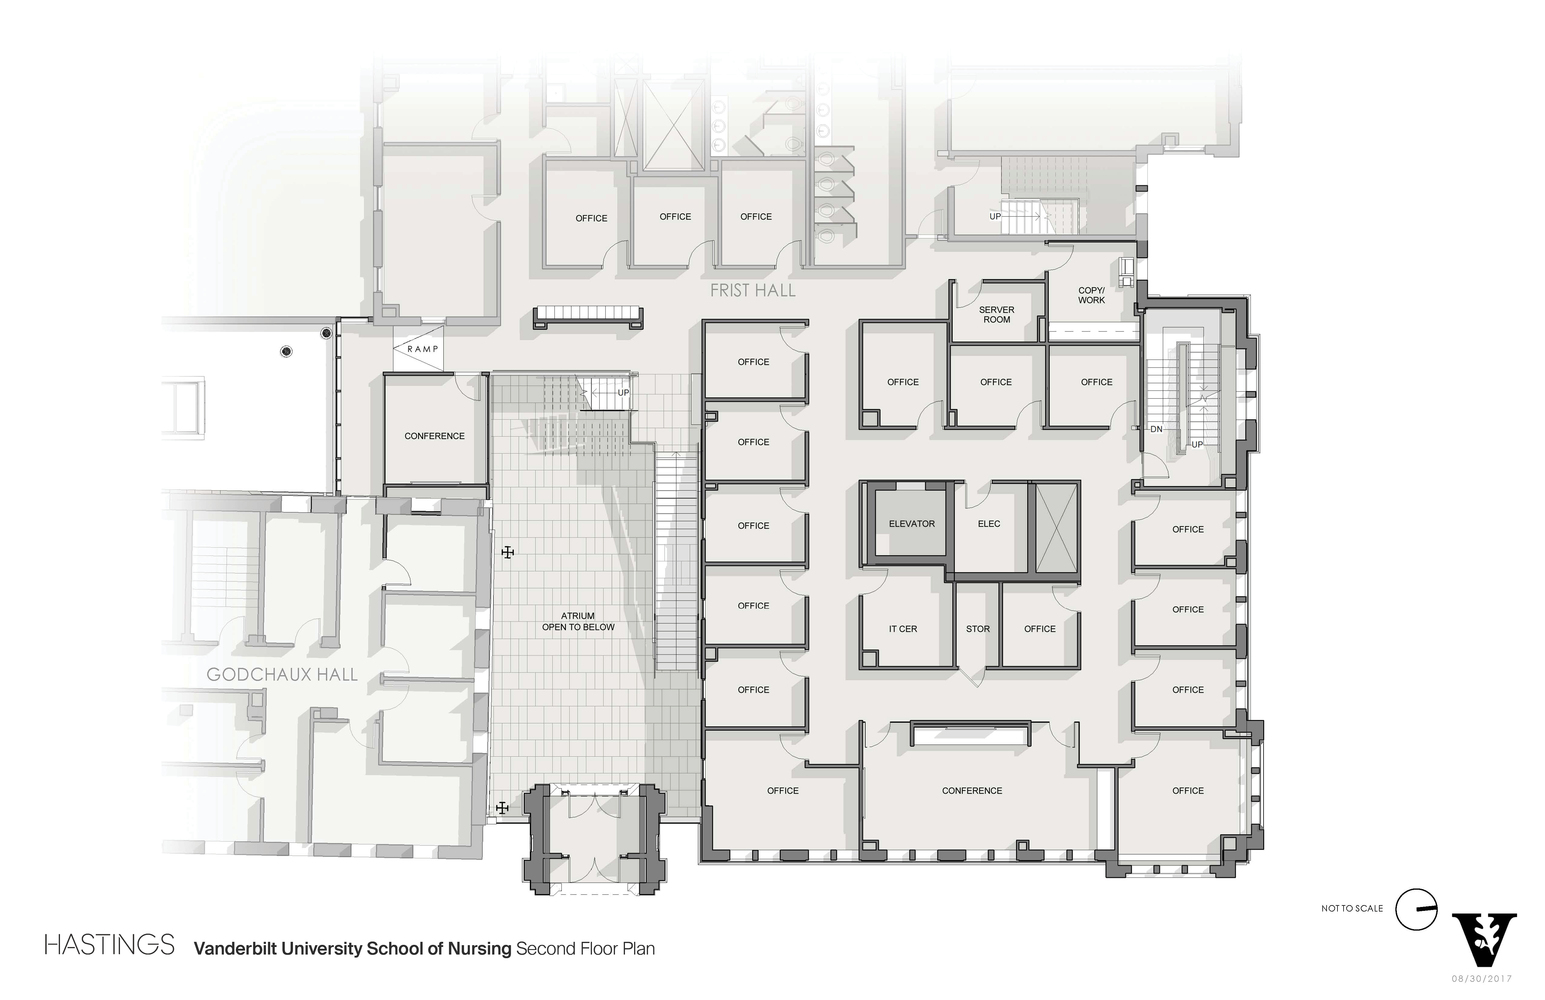 02_Vanderbilt_University_School_of_Nursing_Second_Floor_Plan.jpg